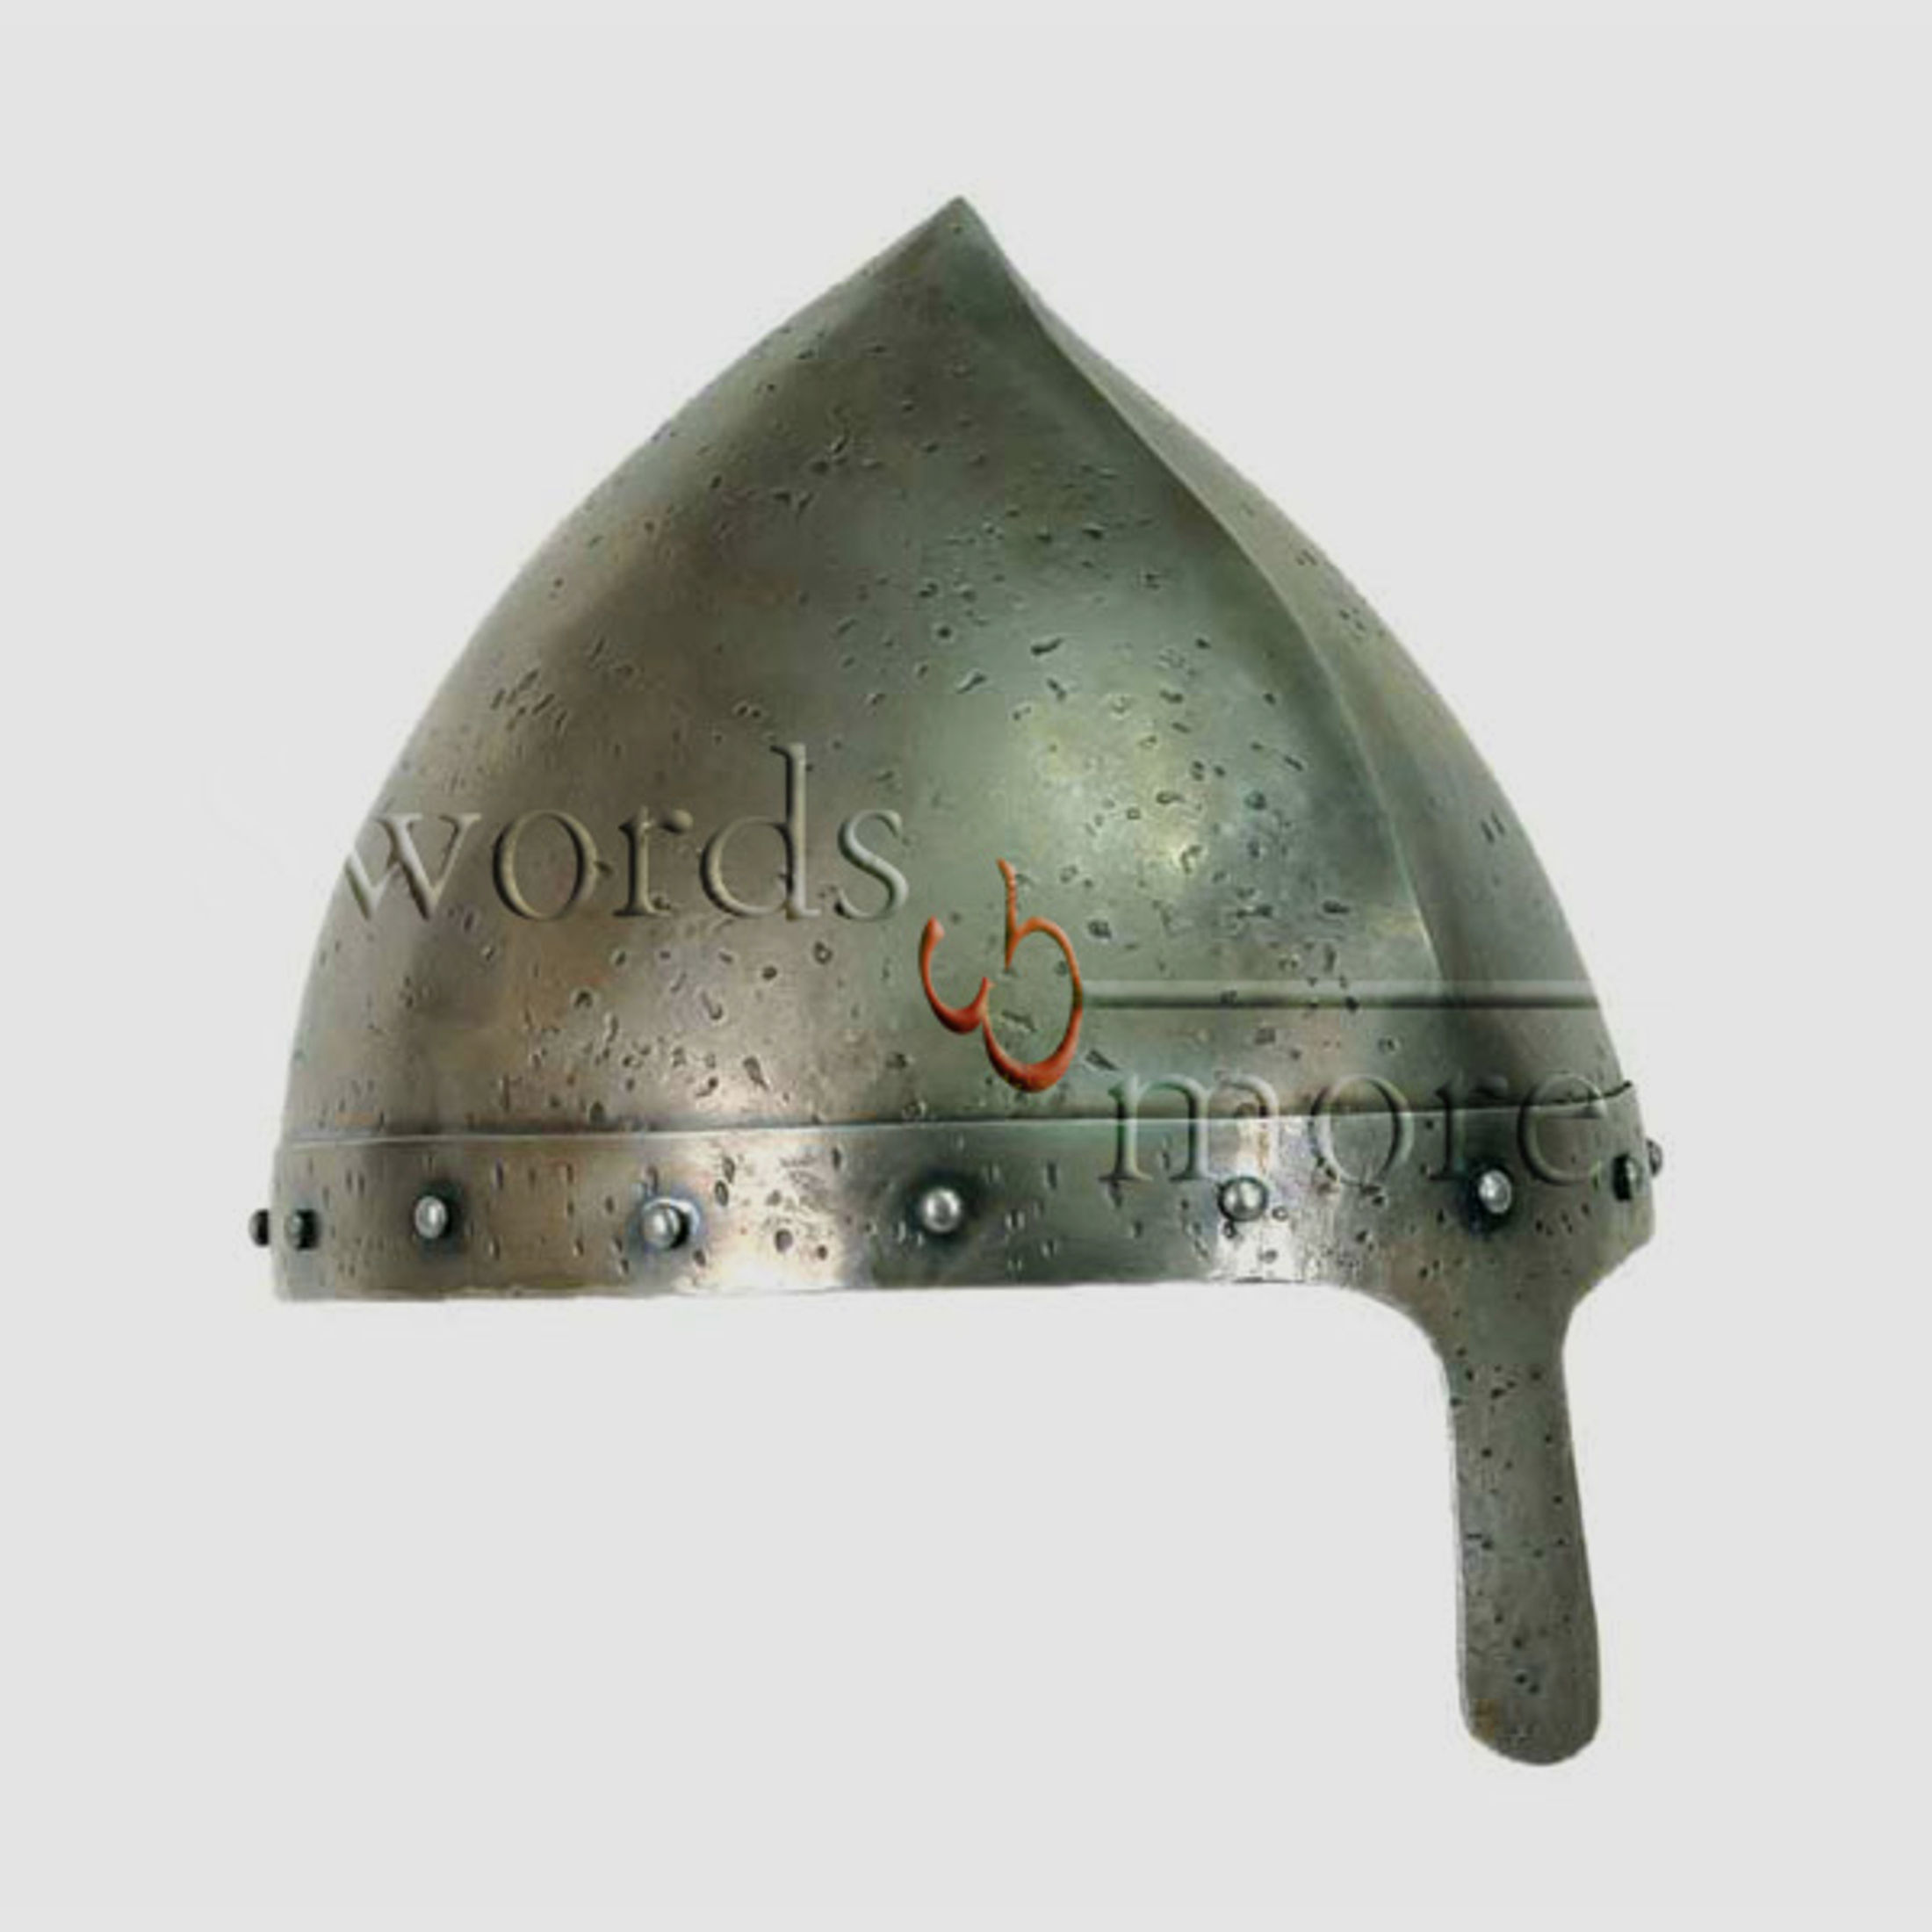 Neuer Normannen Helm